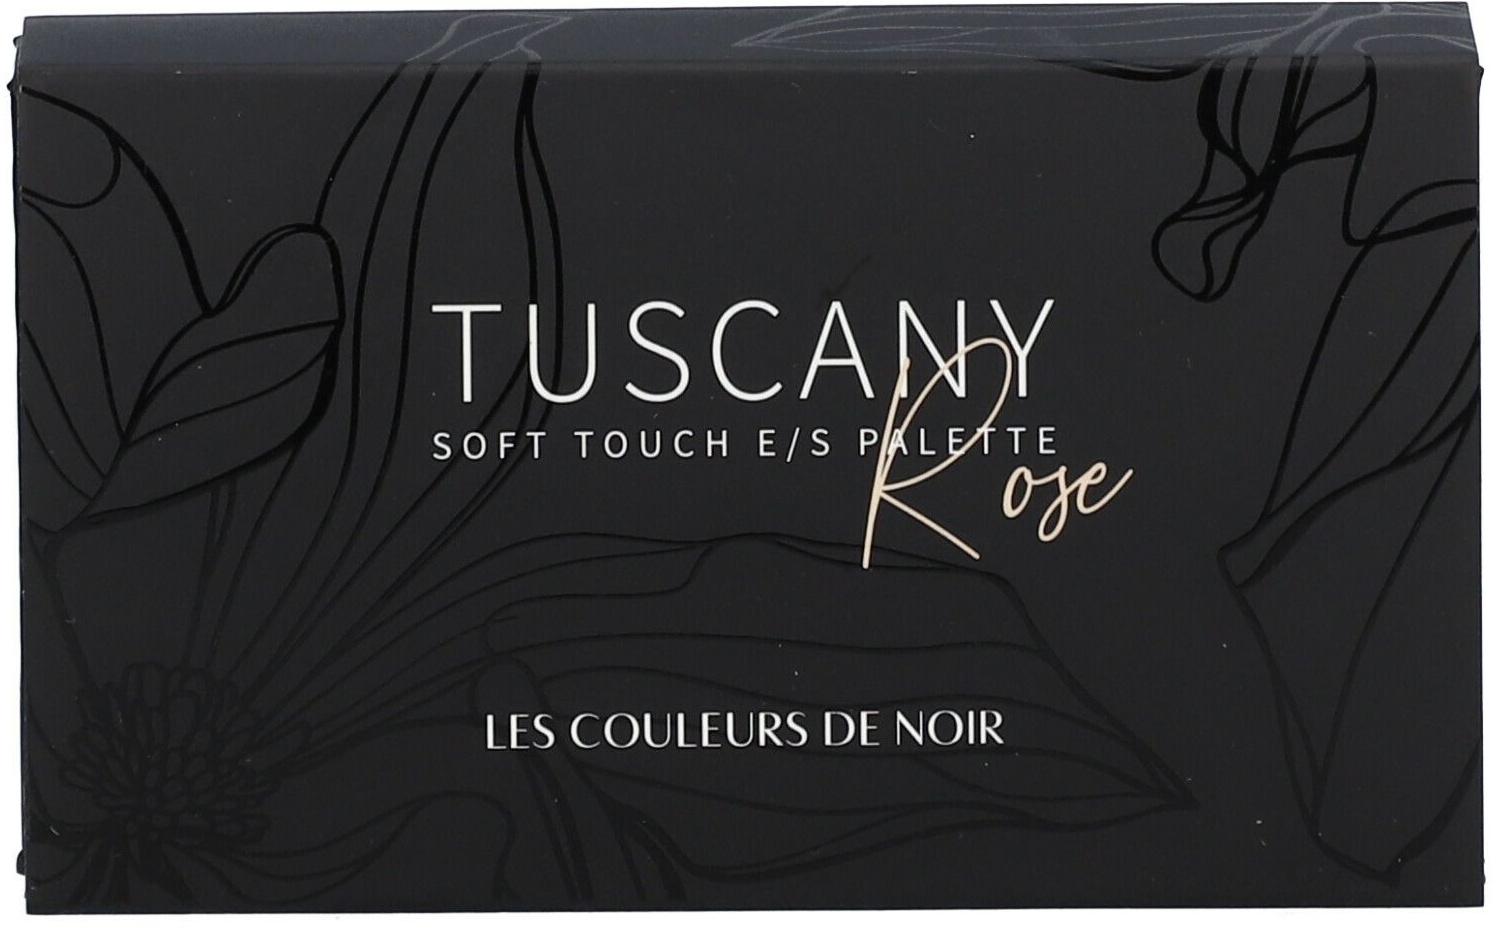 Les Couleurs de Noir Soft Touch Eyeshadow Palette 01 Tuscany Rose 1 pc(s) fond(s) de teint